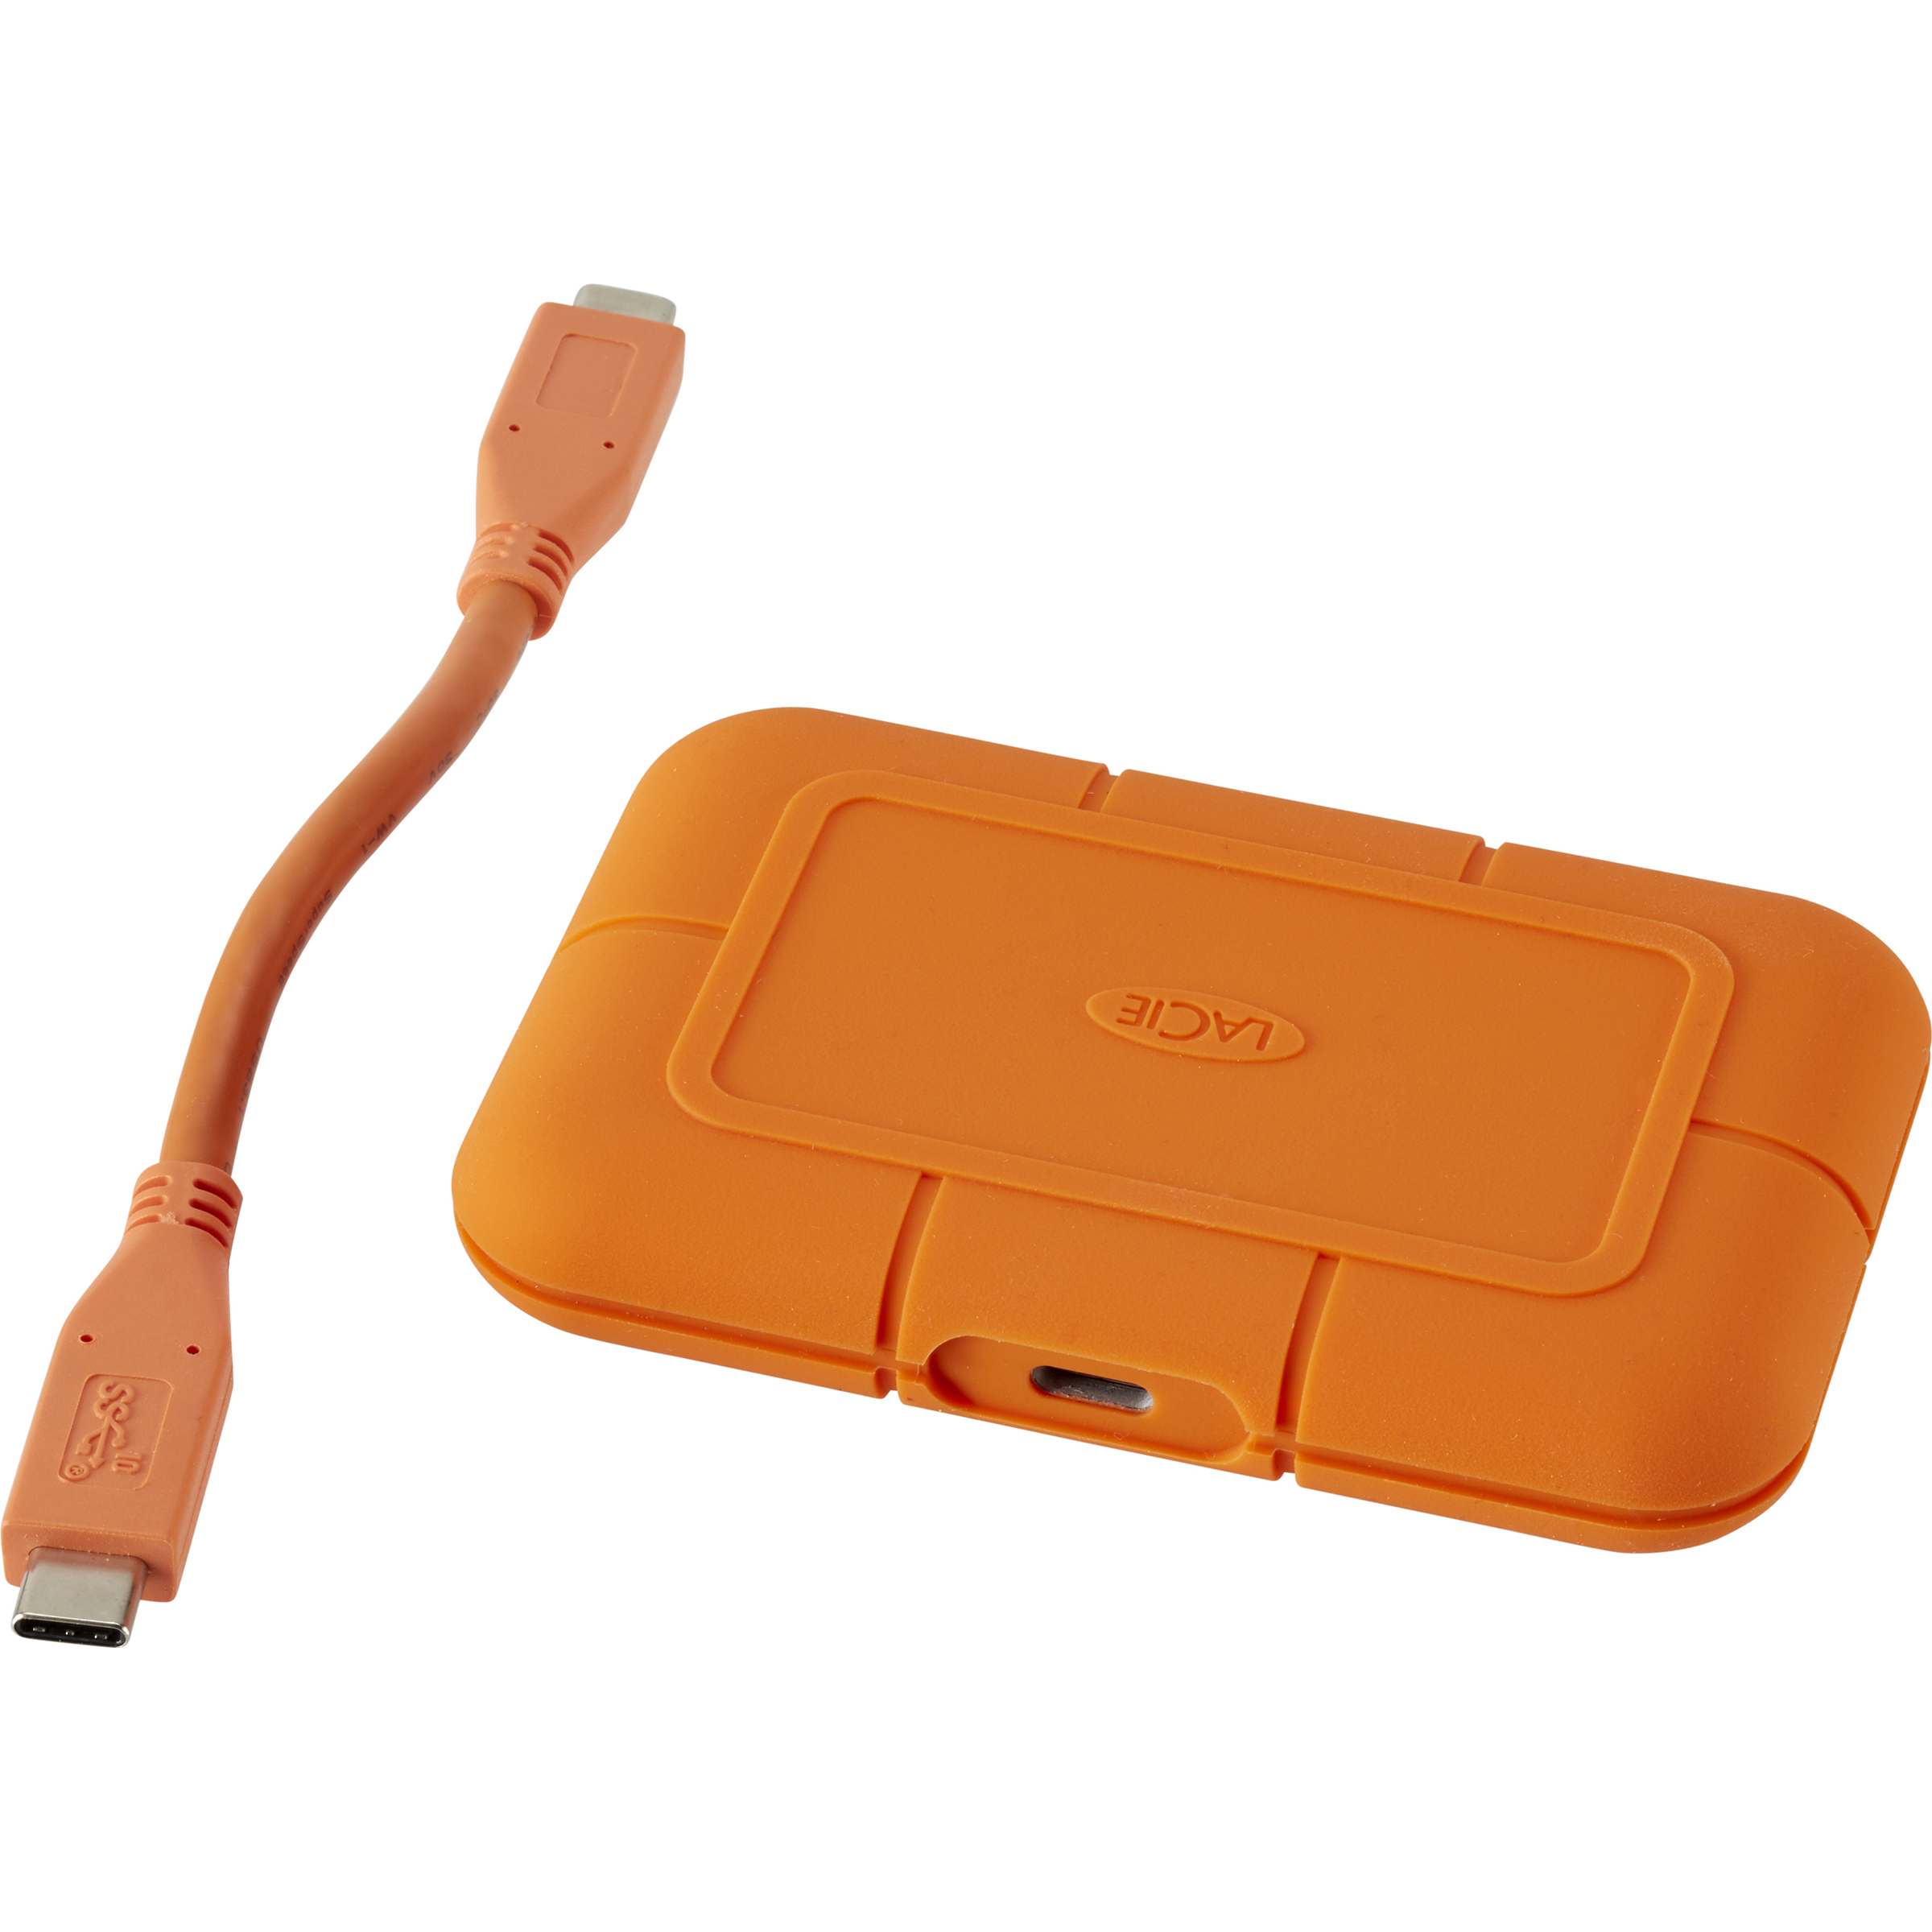 LaCie Portable SSD 500 Go (USB-C) - Disque dur externe - LDLC